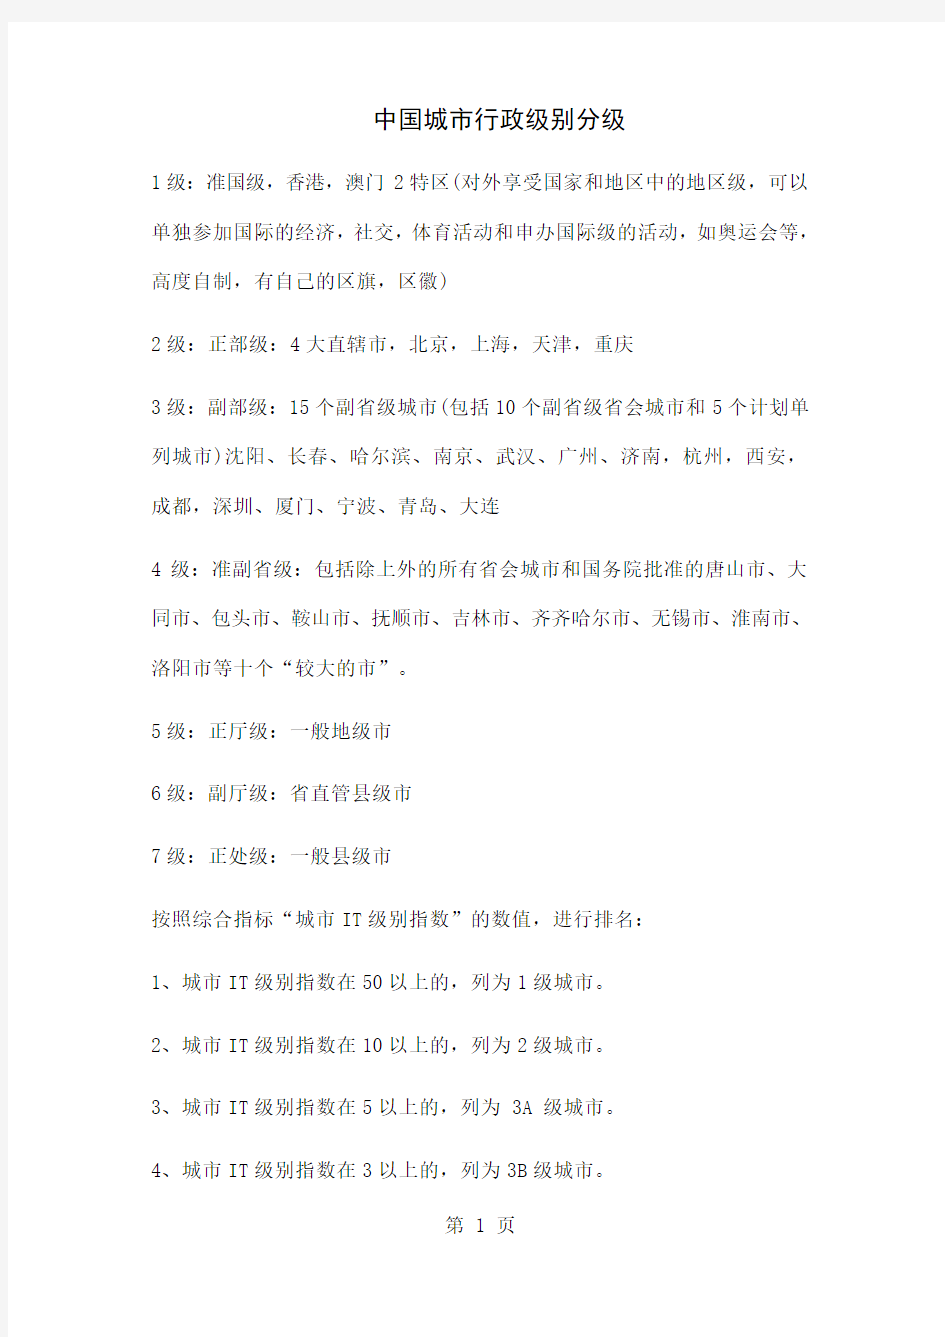 中国城市行政级别分级共7页